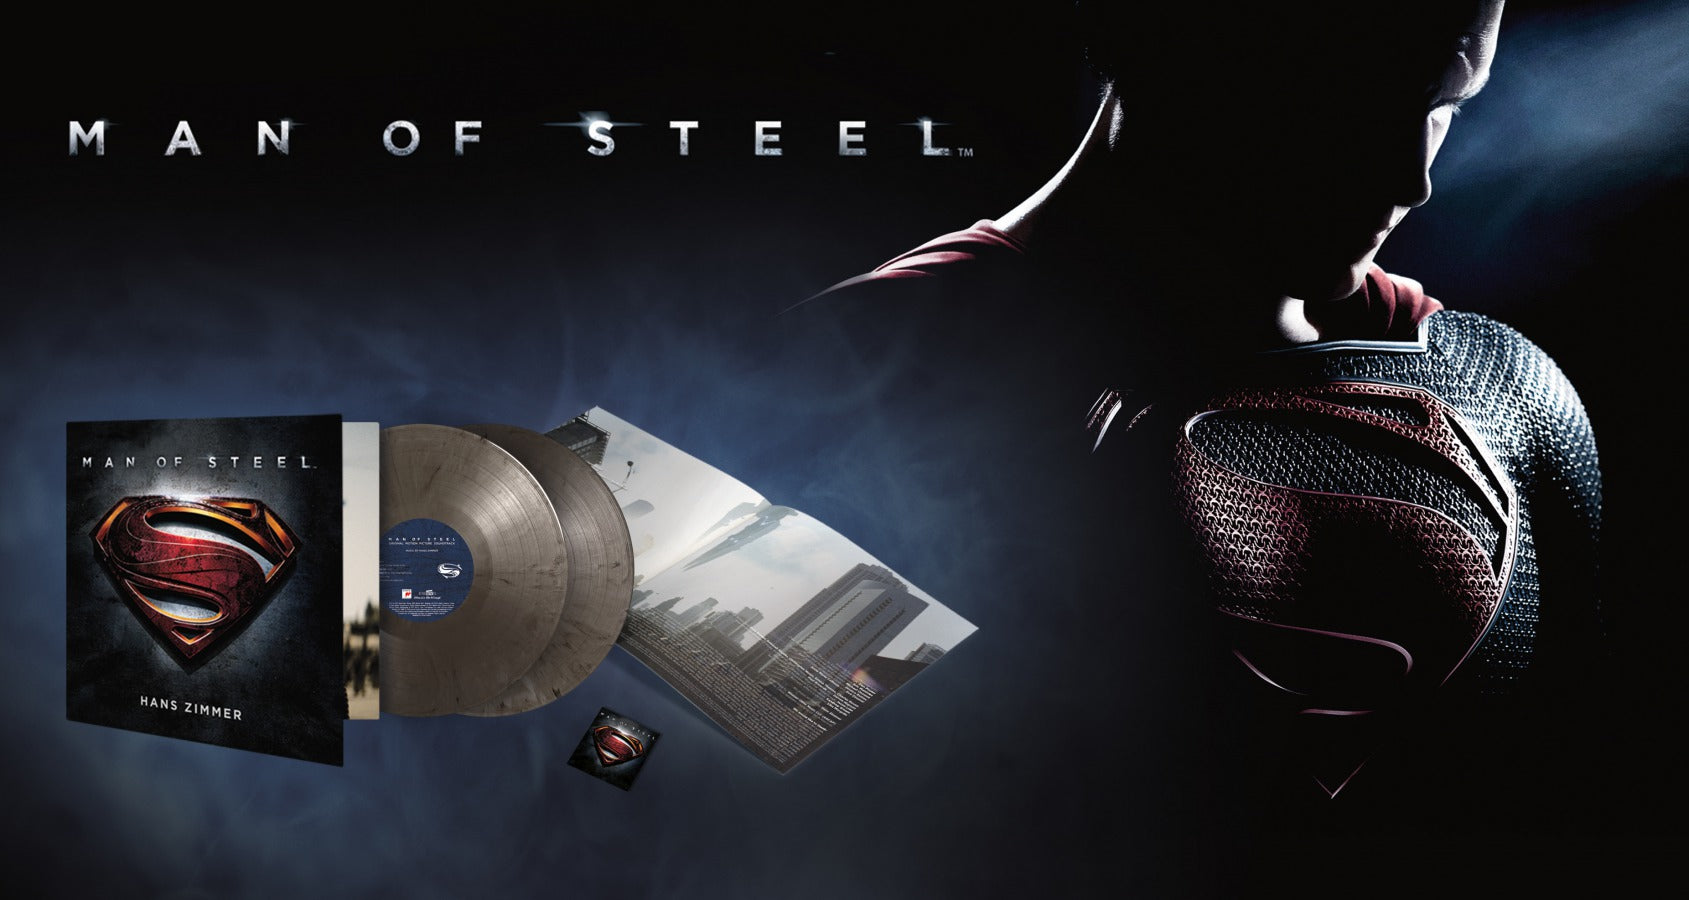 Man of Steel - Vinyl Soundtrack